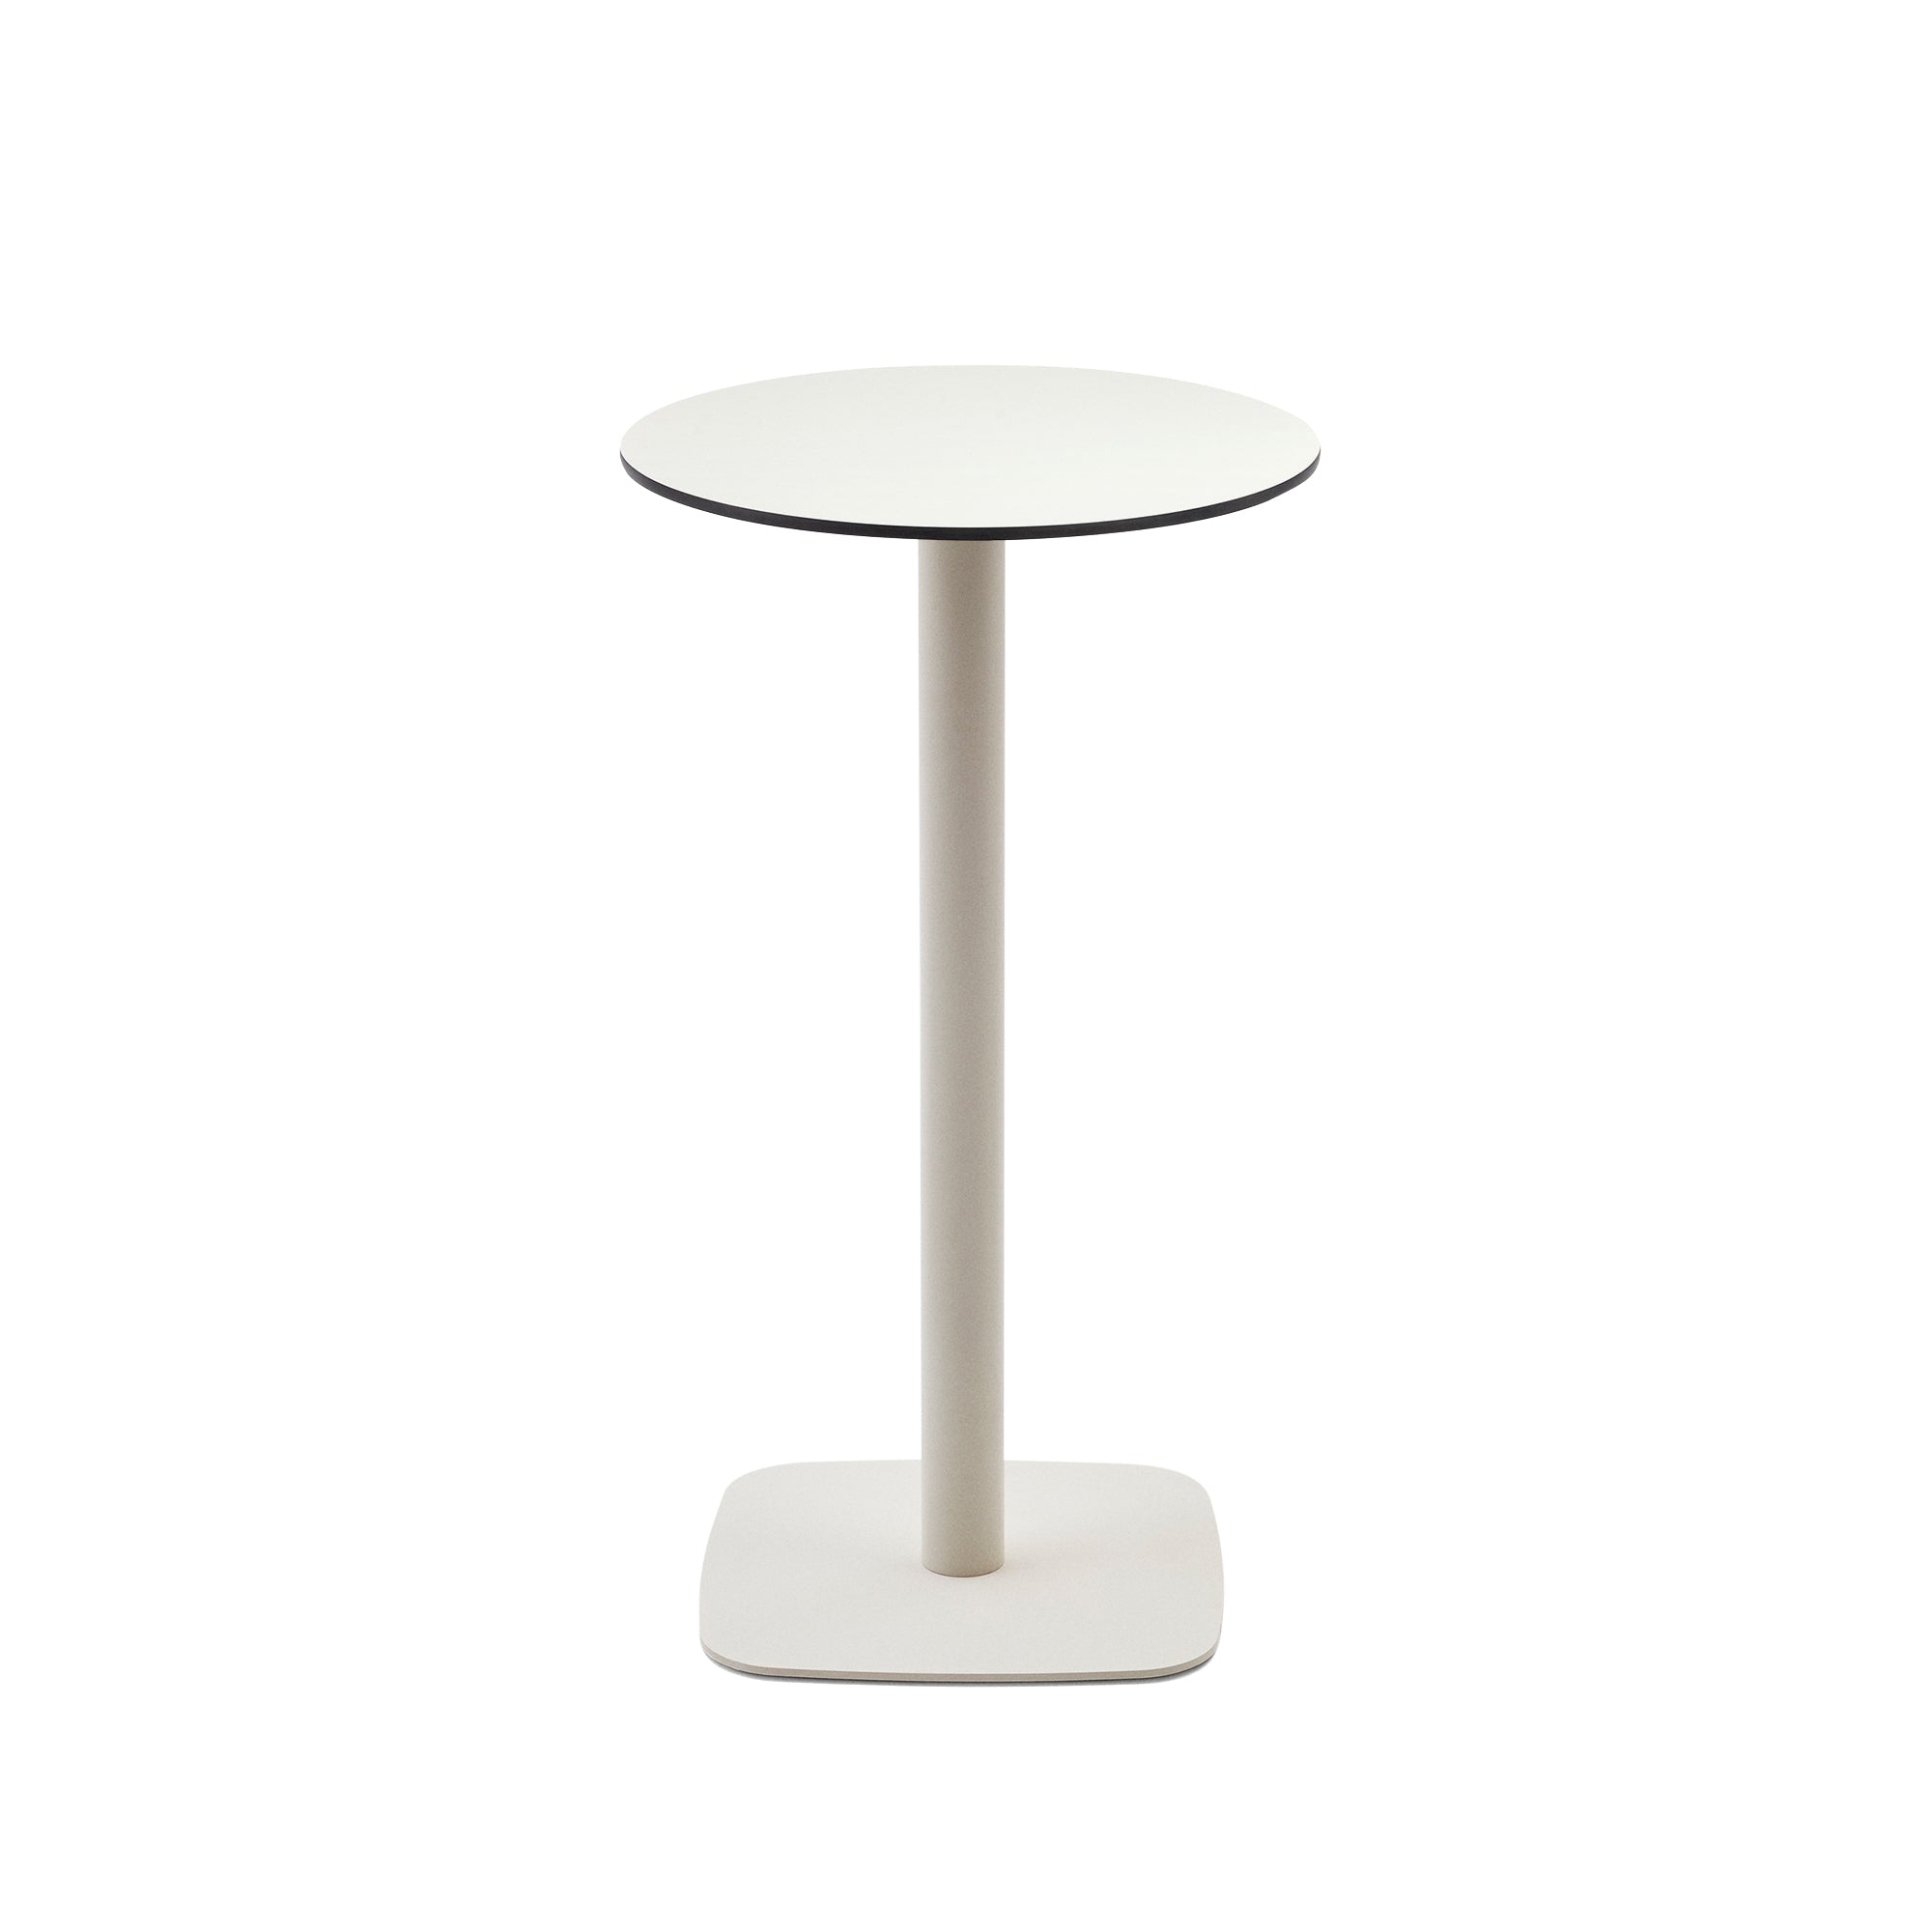 Dina magas kerek kültéri asztal fehér színben, fehérre festett fémlábbal, Ø 60 x 96 cm, kültéri asztal, fehér színben, Ø 60 x 96 cm